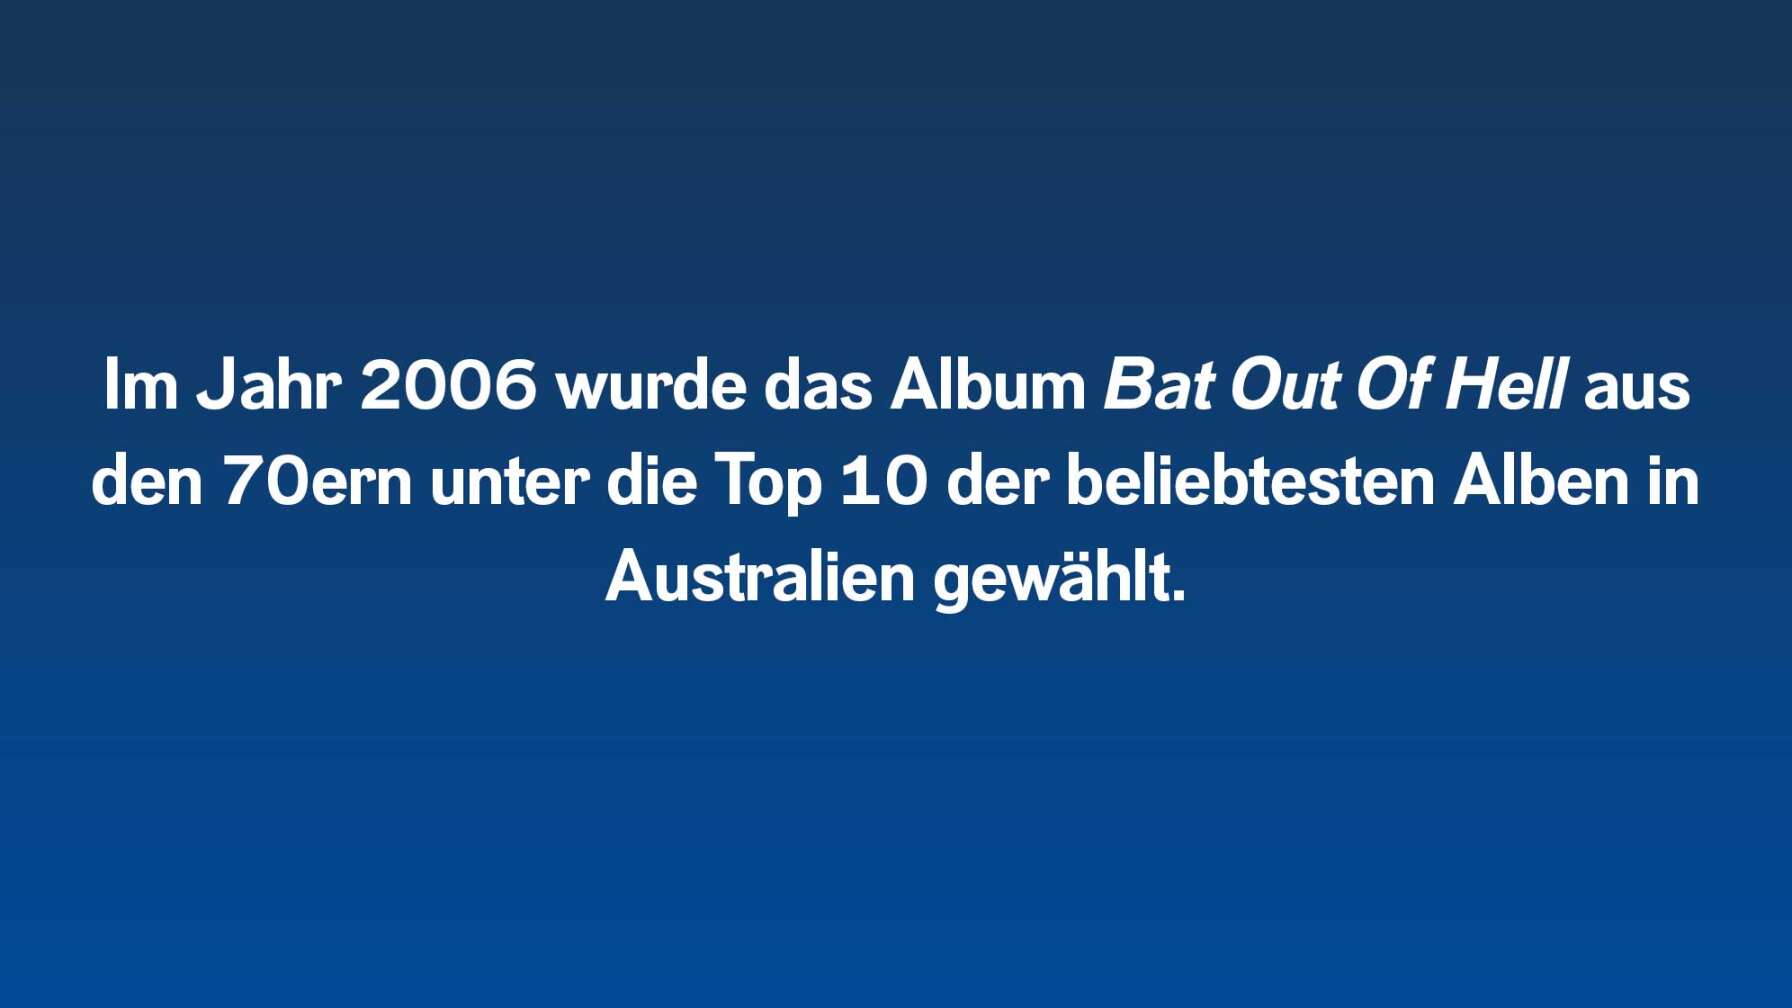 Im Jahr 2006 wurde das Album aus den 70ern unter die Top 10 der beliebtesten Alben in Australien gewählt.